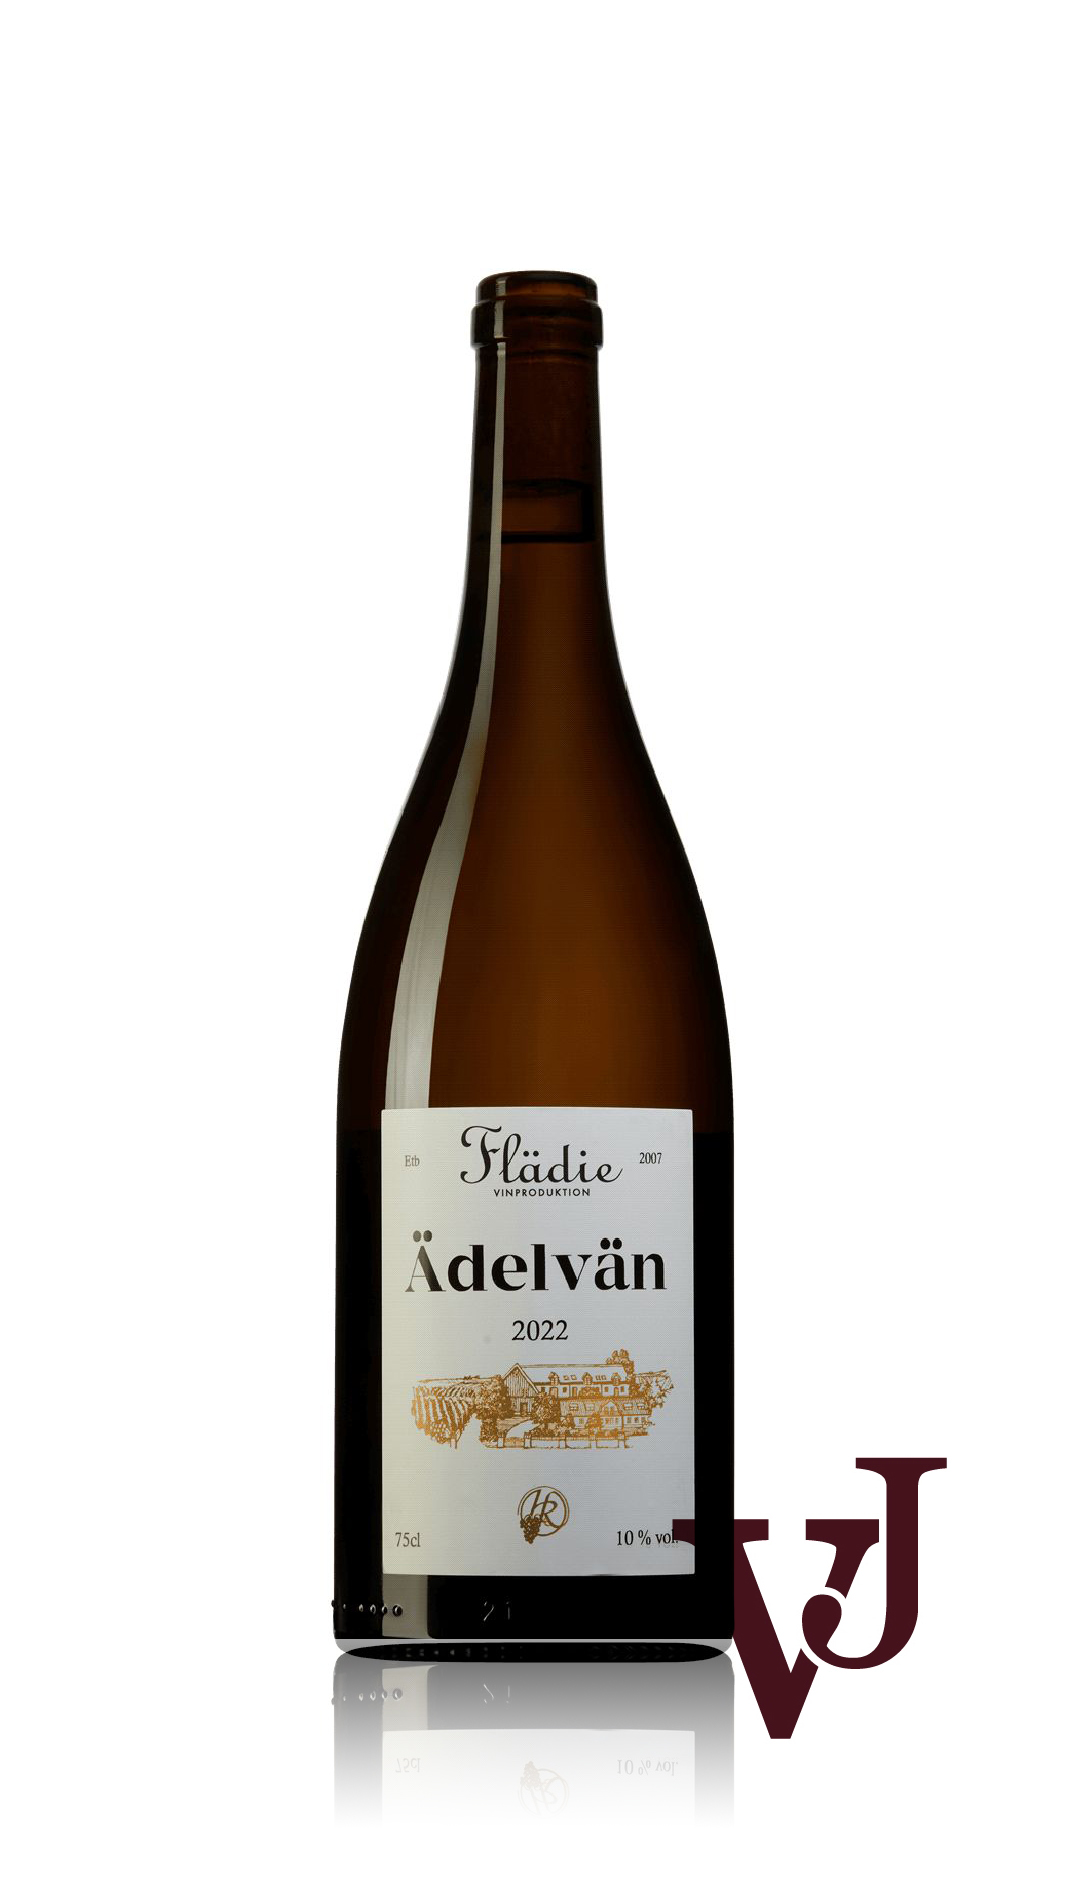 Vitt Vin - Ädelvän Flädie Vingård och Vinproduktion 2022 artikel nummer 3993701 från producenten Flädie Vingård och Vinproduktion från Sverige.